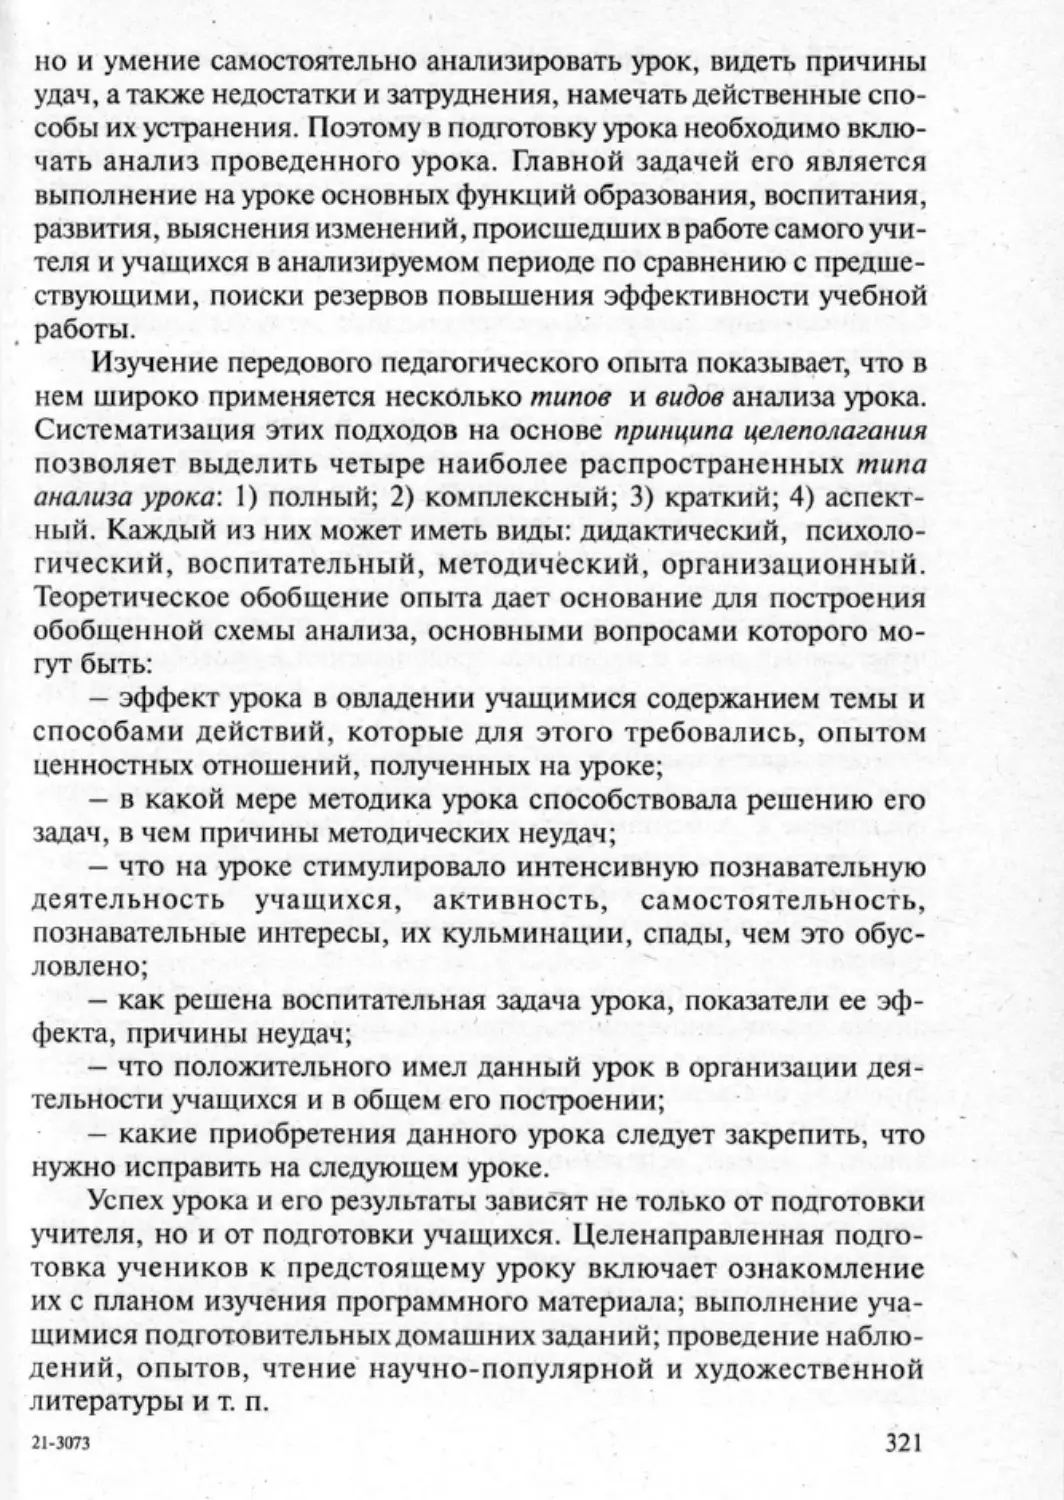 Загрекова Л.В., Николаева В.В - 0322